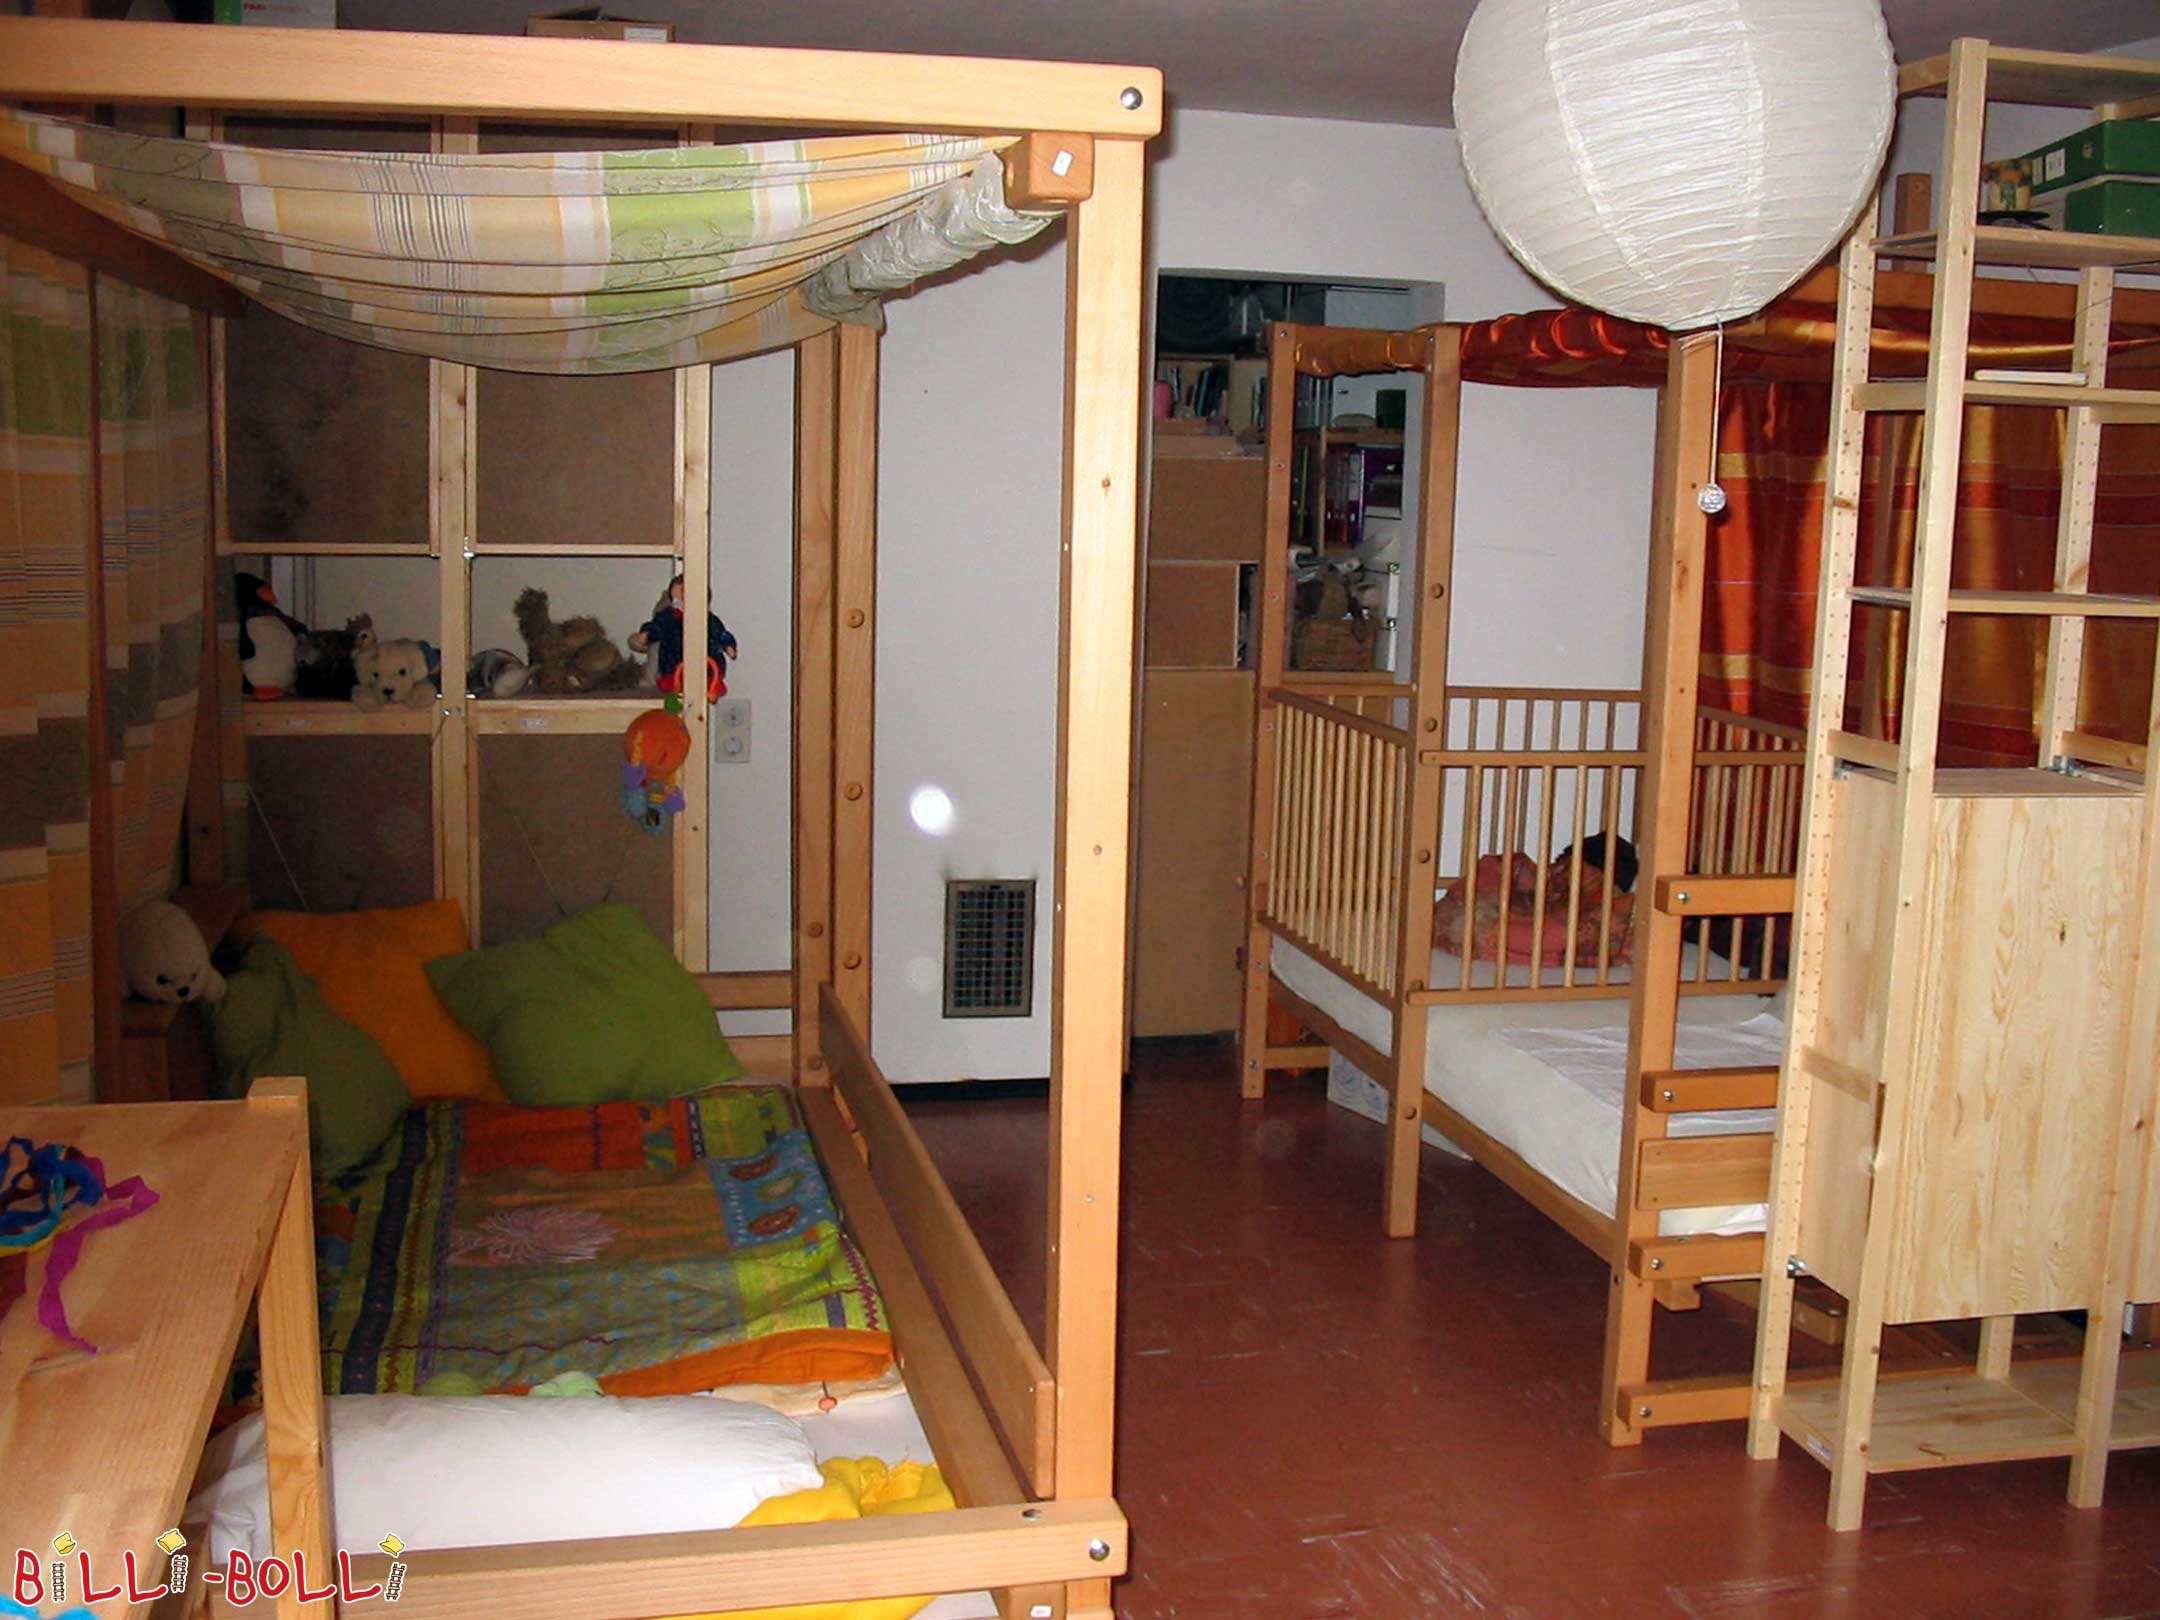 Két tetőtéri ágy, amely a gyermekkel növekszik a 2. magasságban, a jobb … (Tetőtéri ágy nő a gyermekkel)